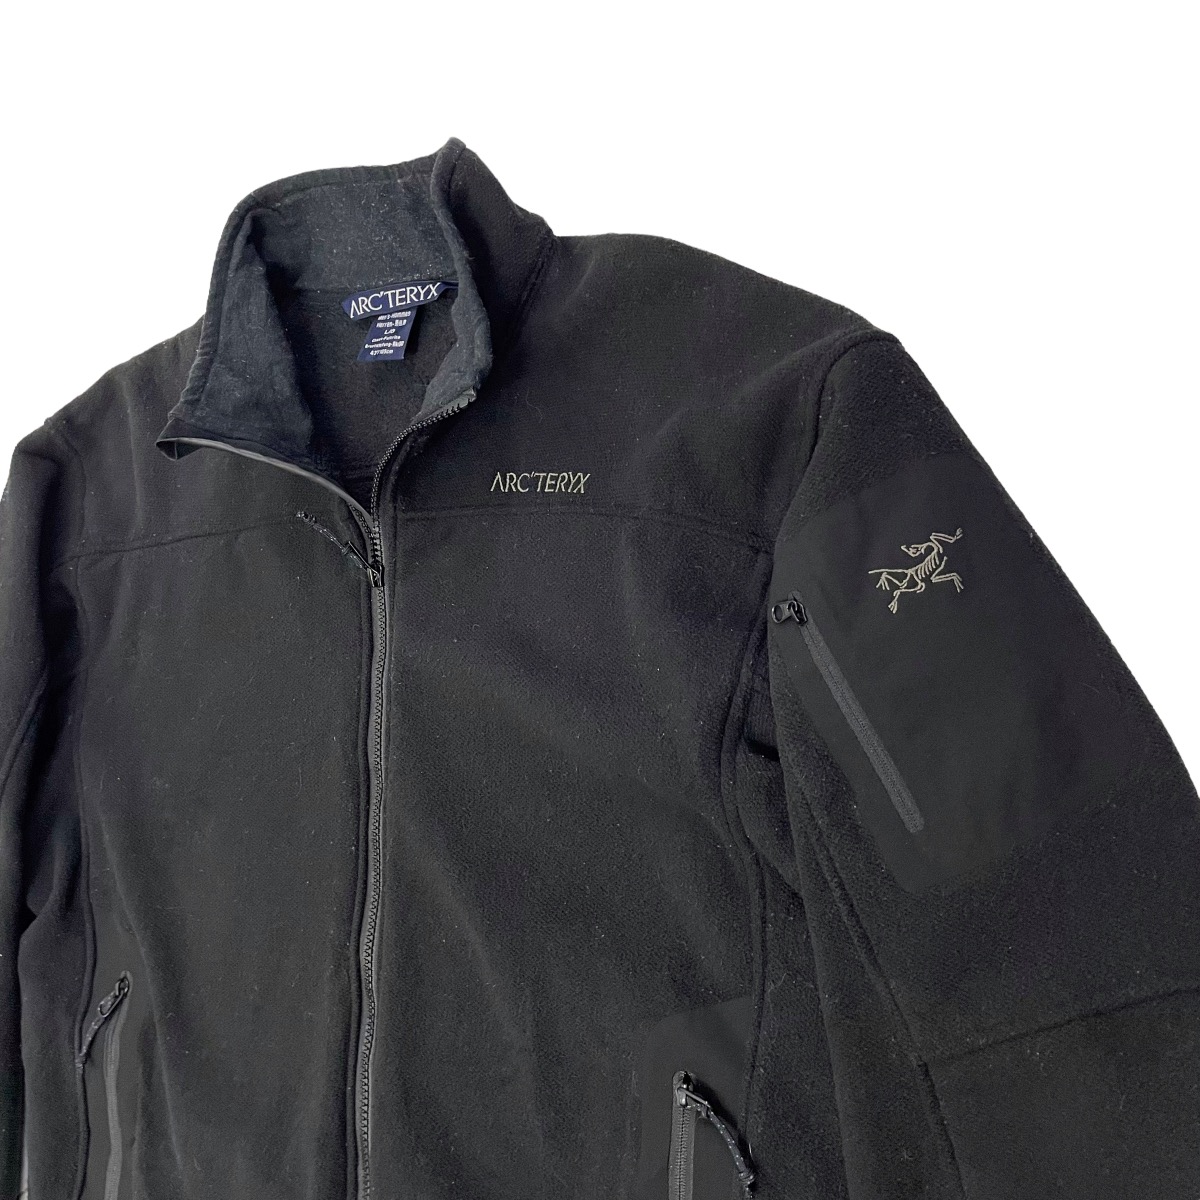 💥 Vintage Arcteryx Zipper Lined Fleece Jacket - 5